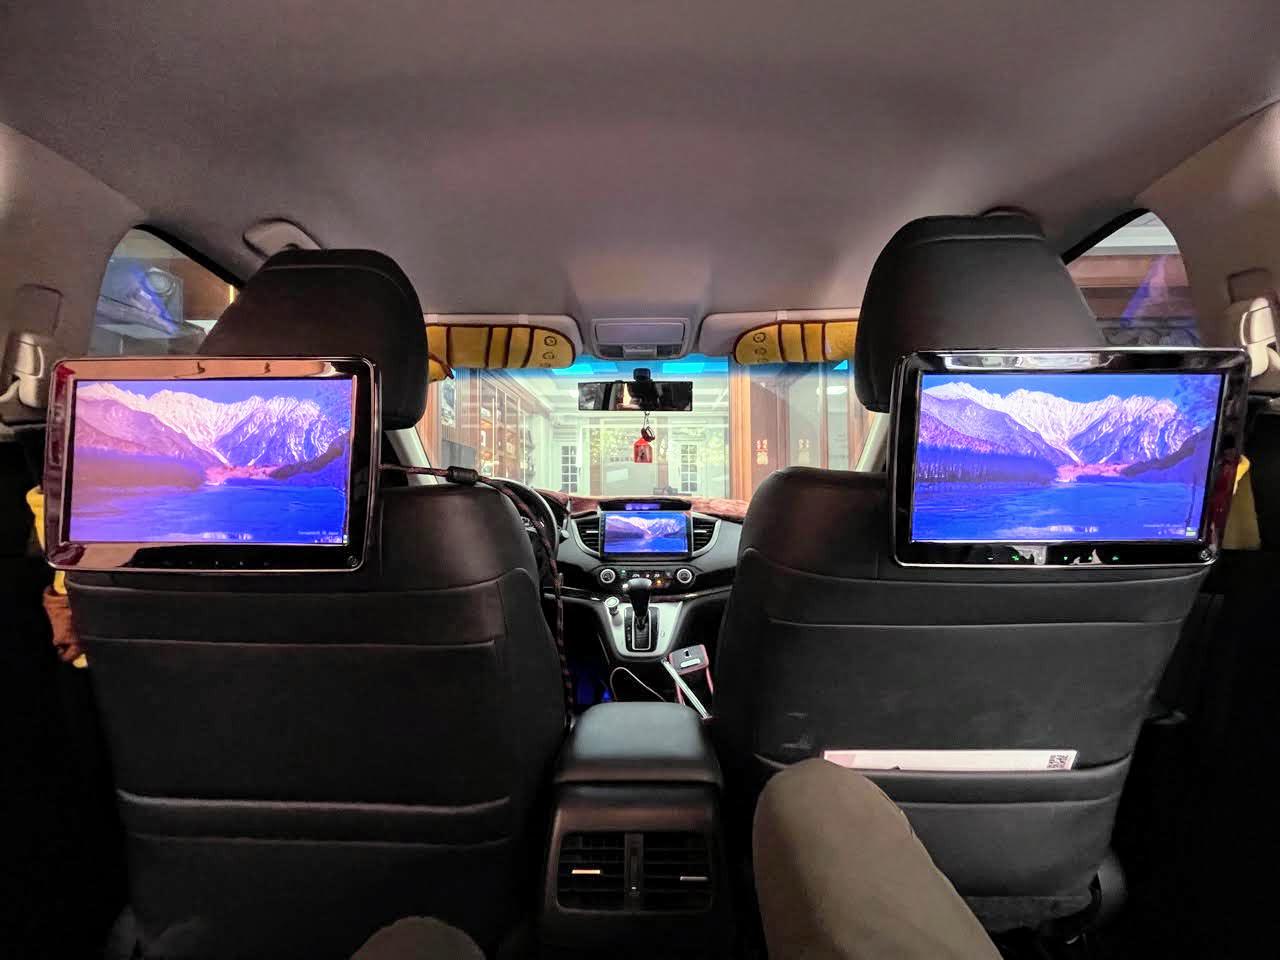 敏聲汽車影音/奧斯卡汽車影音多媒體 / 前後乘客共享高品質影音系統 / 台南中西區